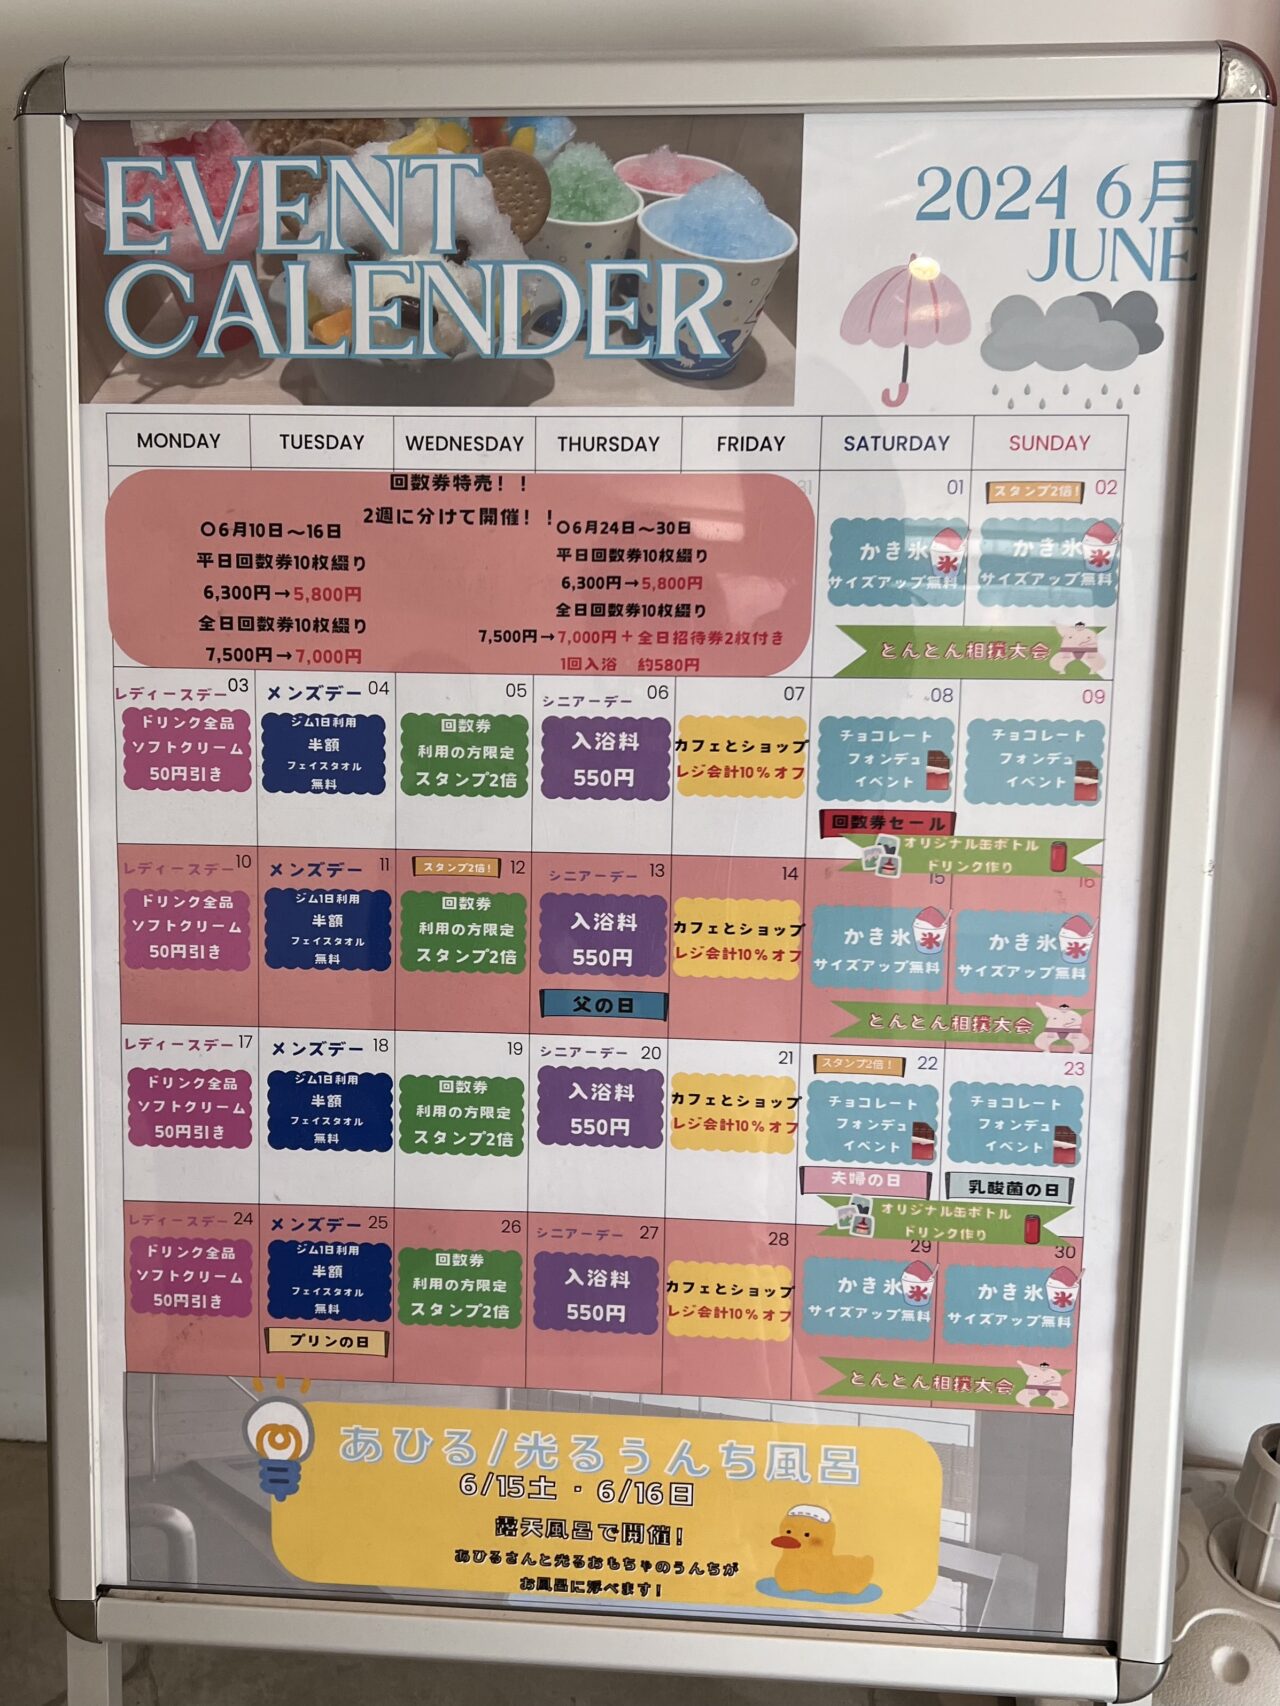 アクアイグニス関西空港のイベントカレンダー